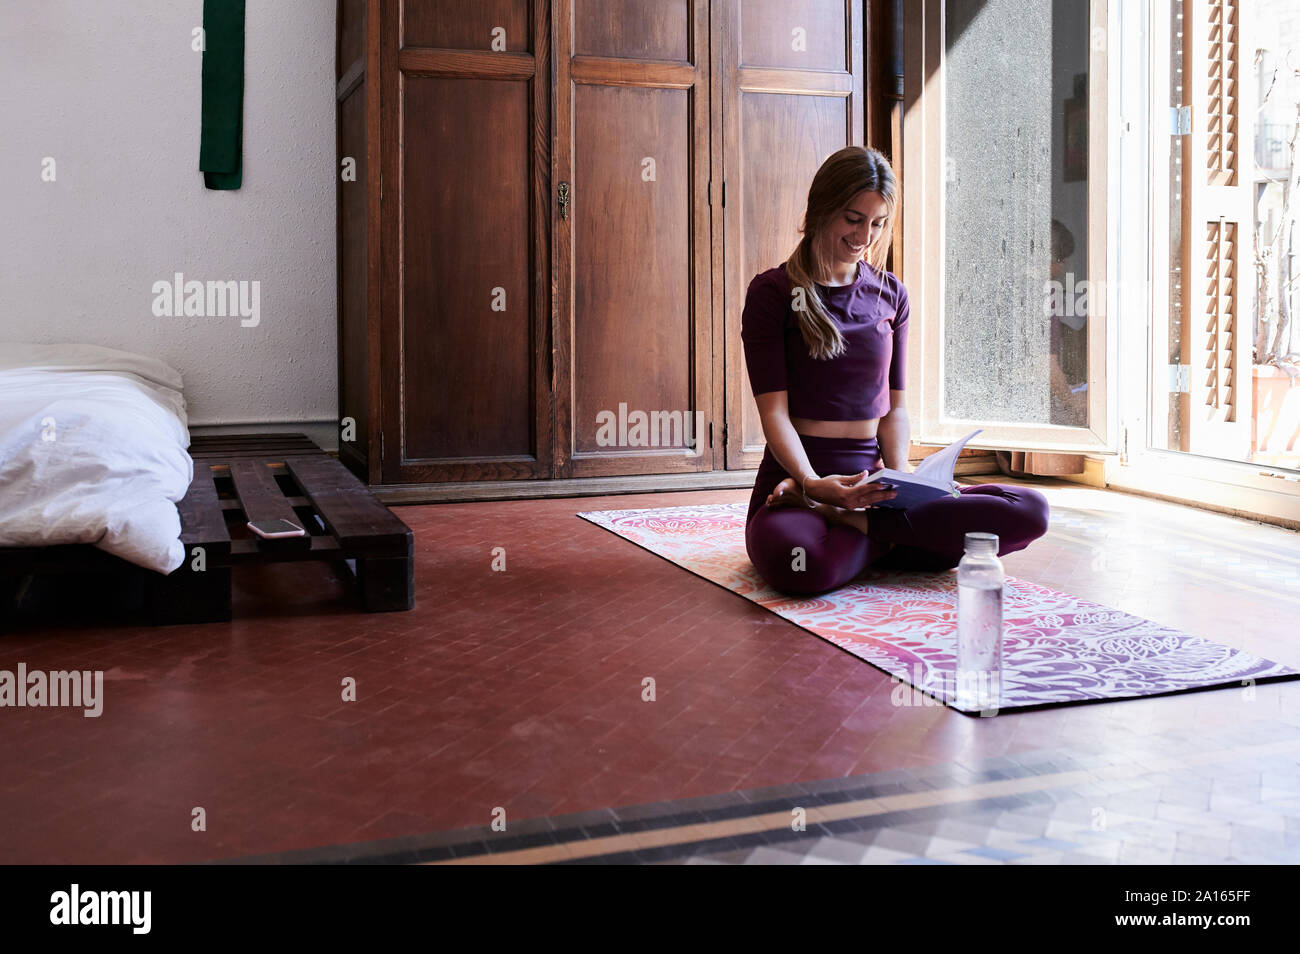 Jeune brunette woman practicing yoga in chambres d'étudiants, la lecture d'un livre Banque D'Images